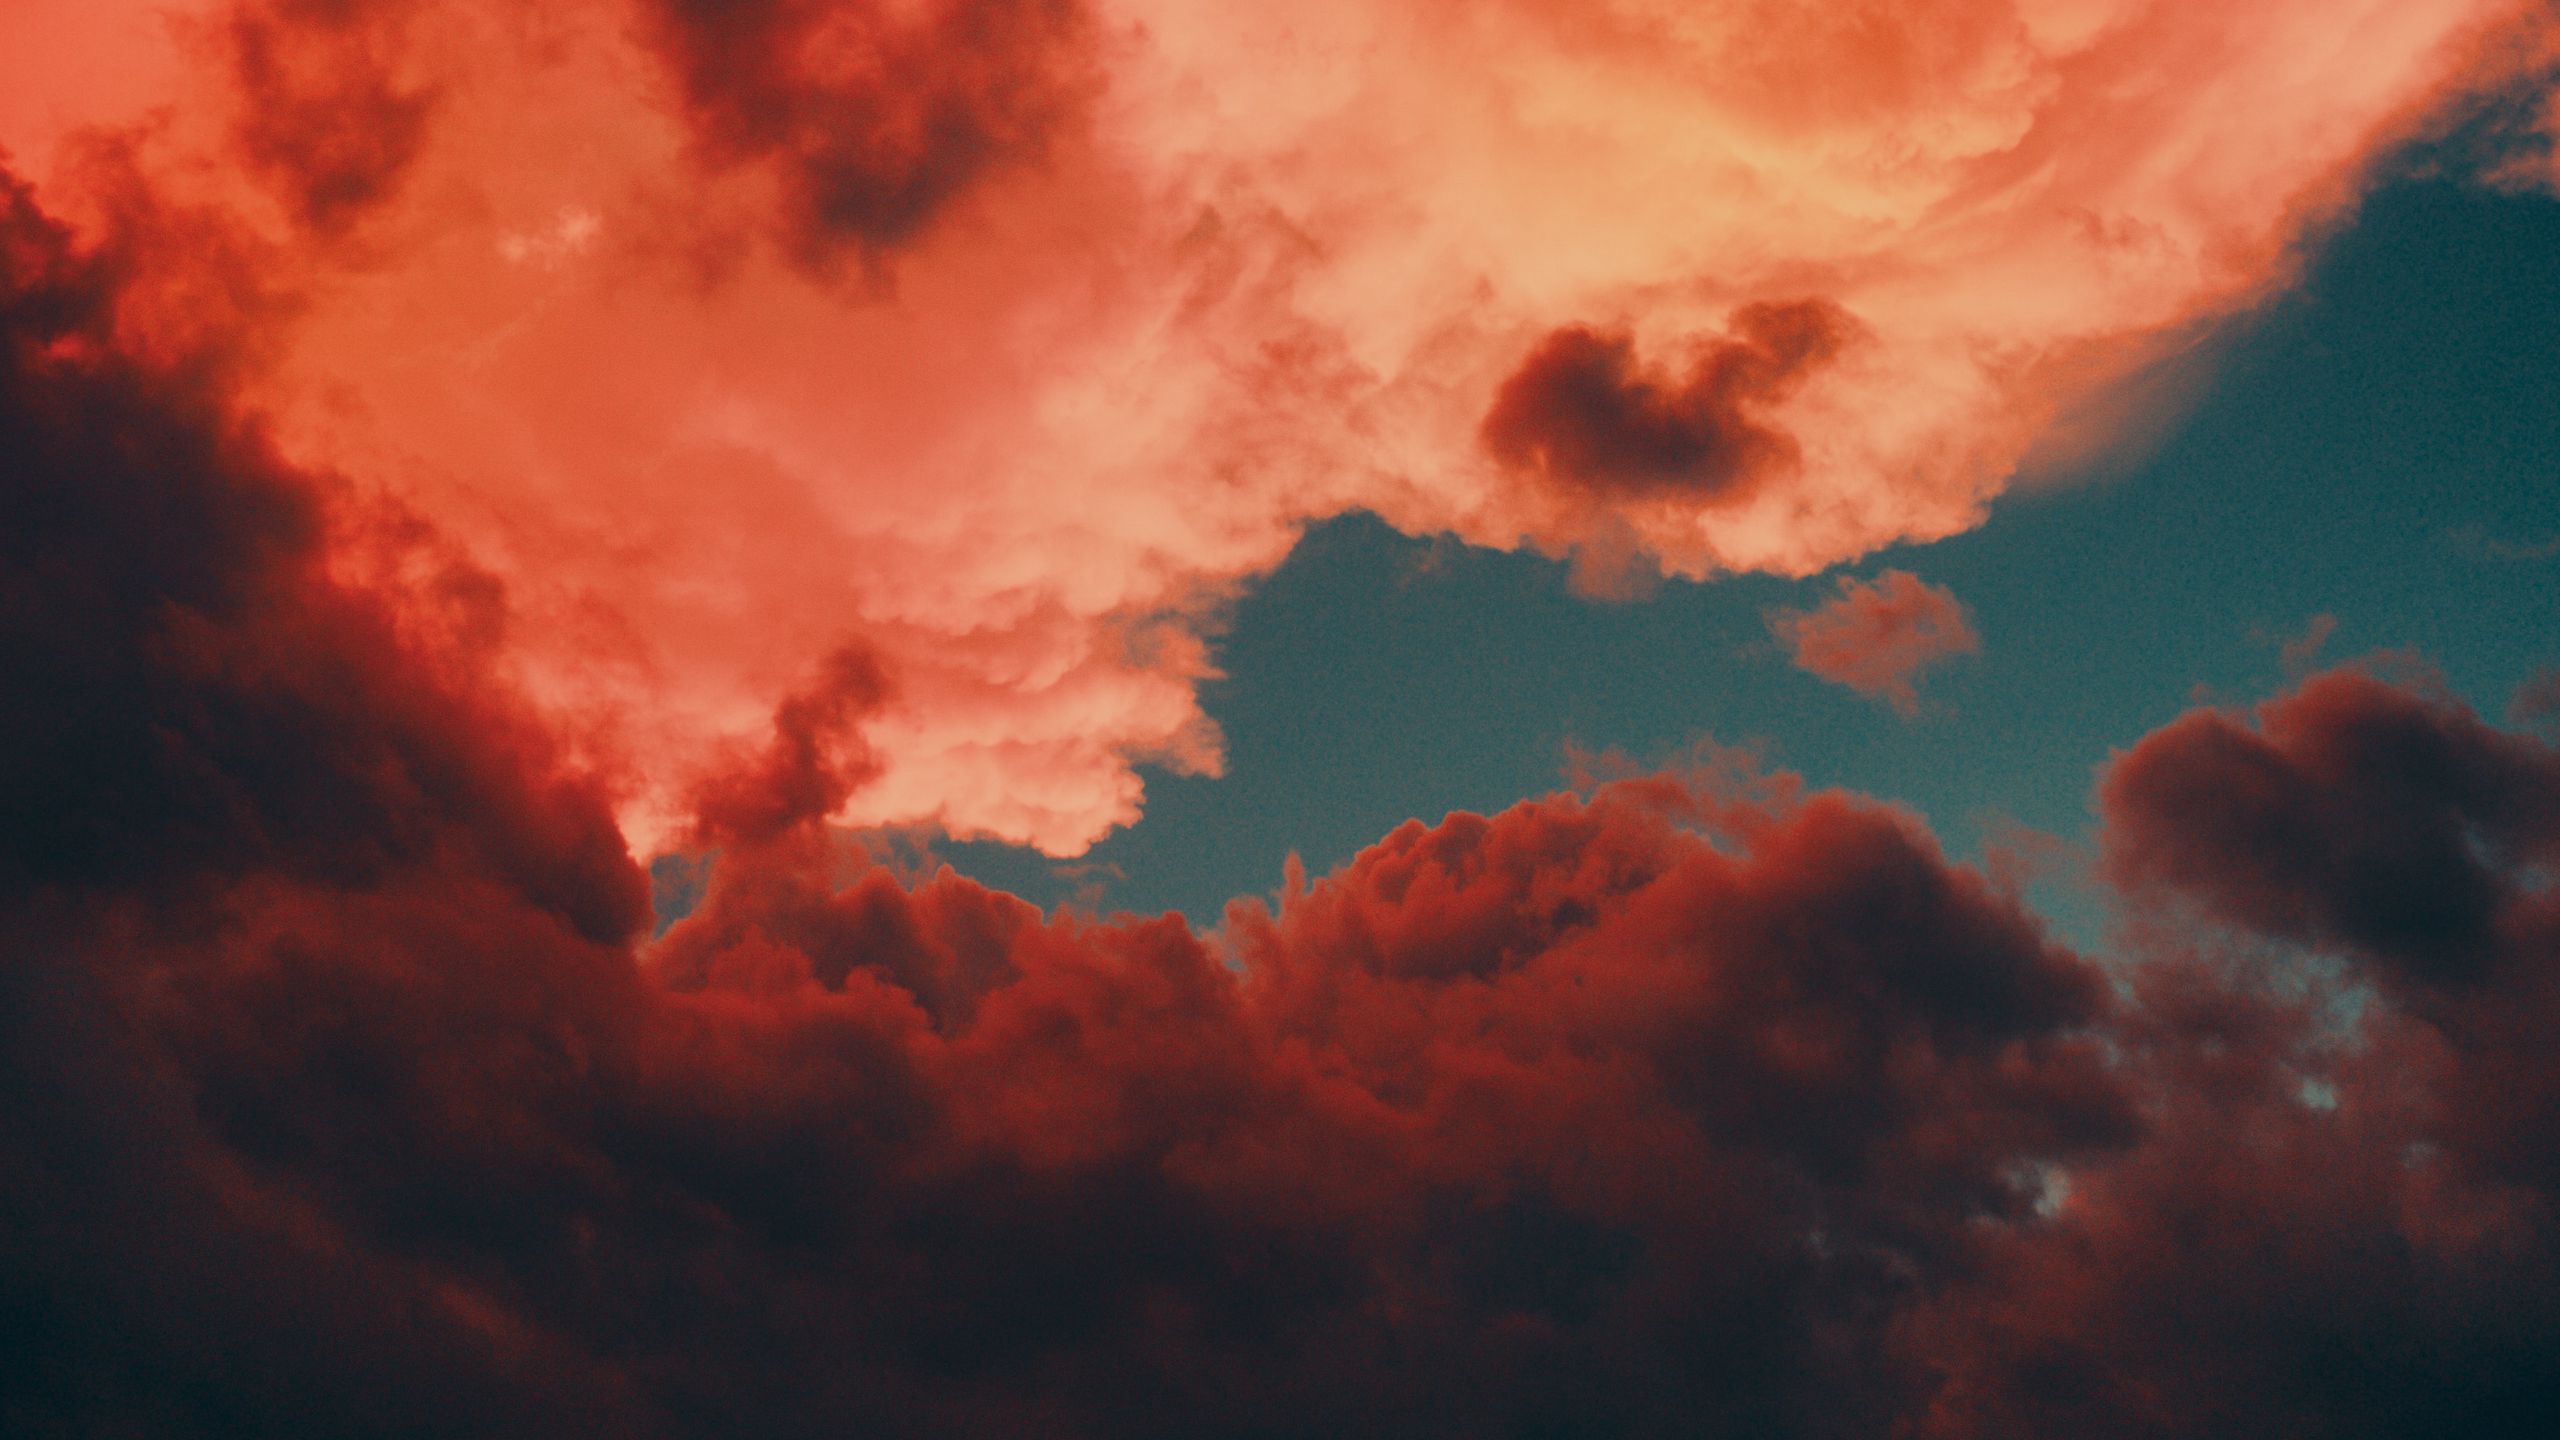 Nếu bạn yêu thích màu đỏ và muốn tìm kiếm một tấm hình nền đẹp mắt, hãy xem hình nền mây đỏ hoàng hôn 4K. Với bầu trời đỏ rực rỡ và những đường nét tinh tế của mây, tấm hình nền này sẽ mang lại cho bạn một không gian thực sự độc đáo và đẹp mắt.